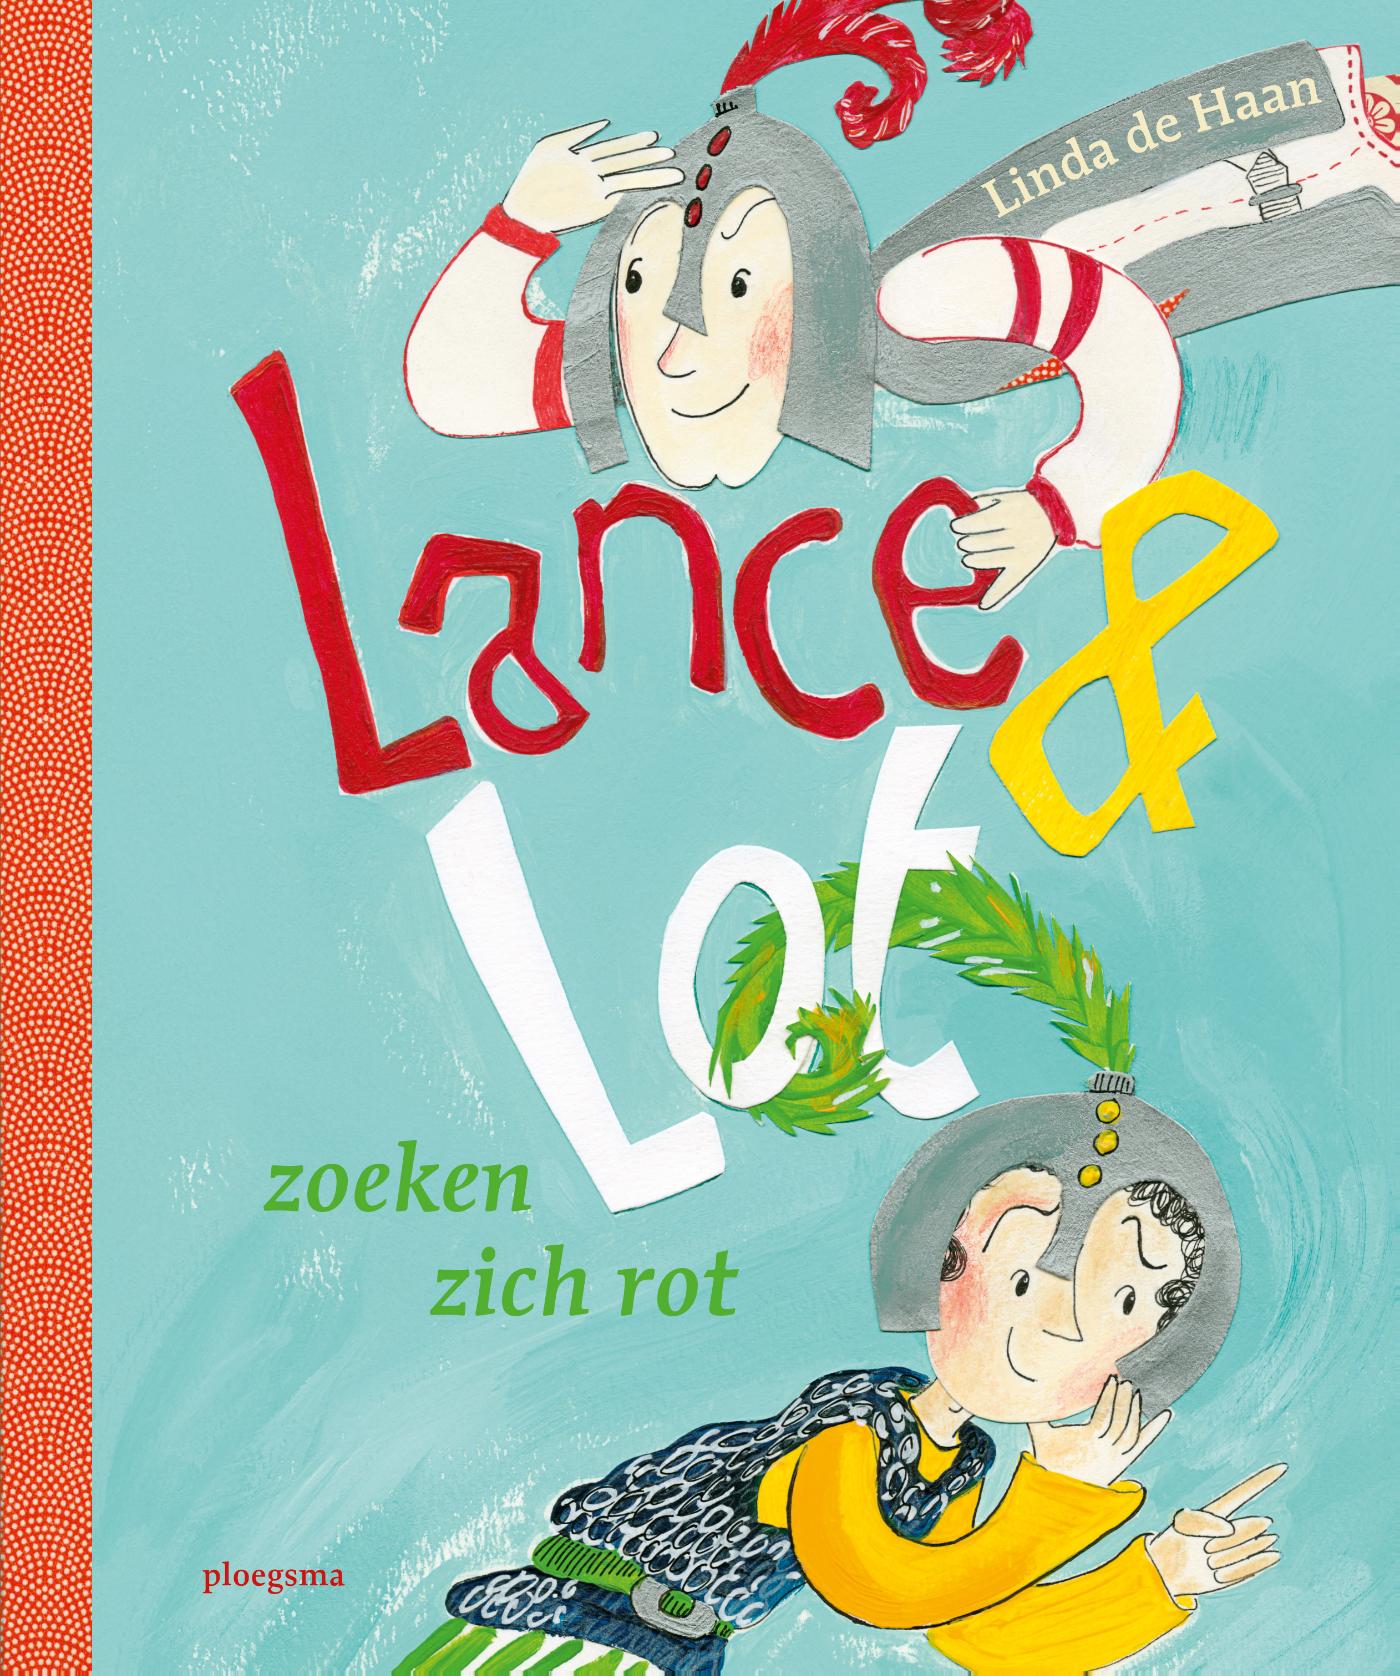 Lance en Lot zoeken zich rot (Ebook)